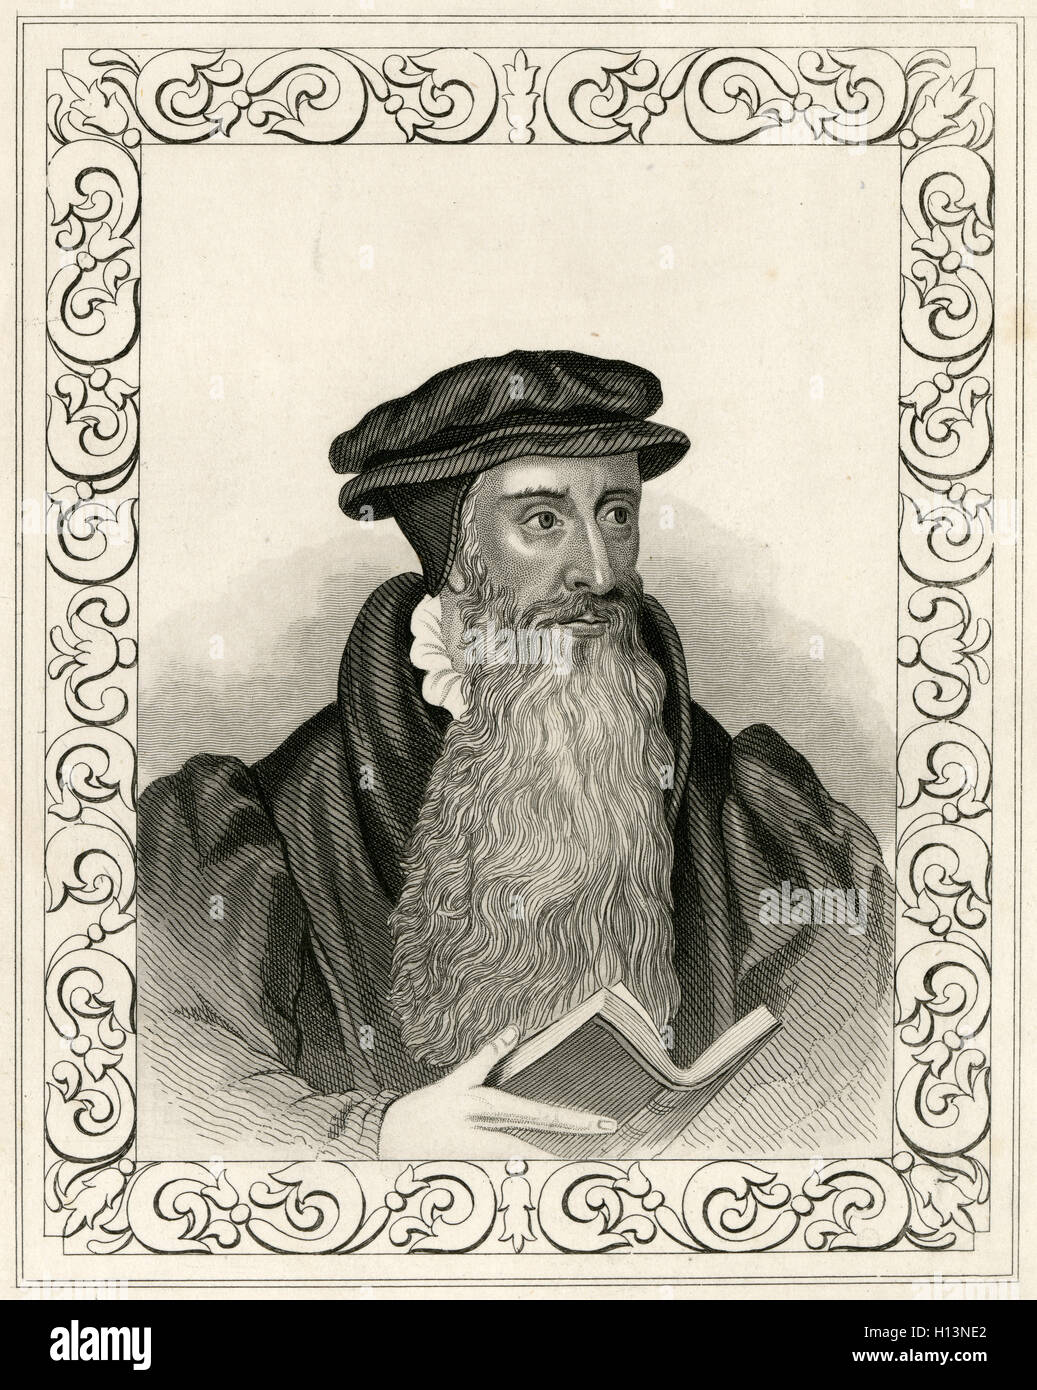 Antike c1850 Gravur, John Knox. John Knox (1513-1572) war ein schottischer Minister, Theologe und Schriftsteller, war ein Führer der Reformation und gilt als der Begründer der Presbyterian Church of Scotland. QUELLE: ORIGINAL GRAVUR. Stockfoto